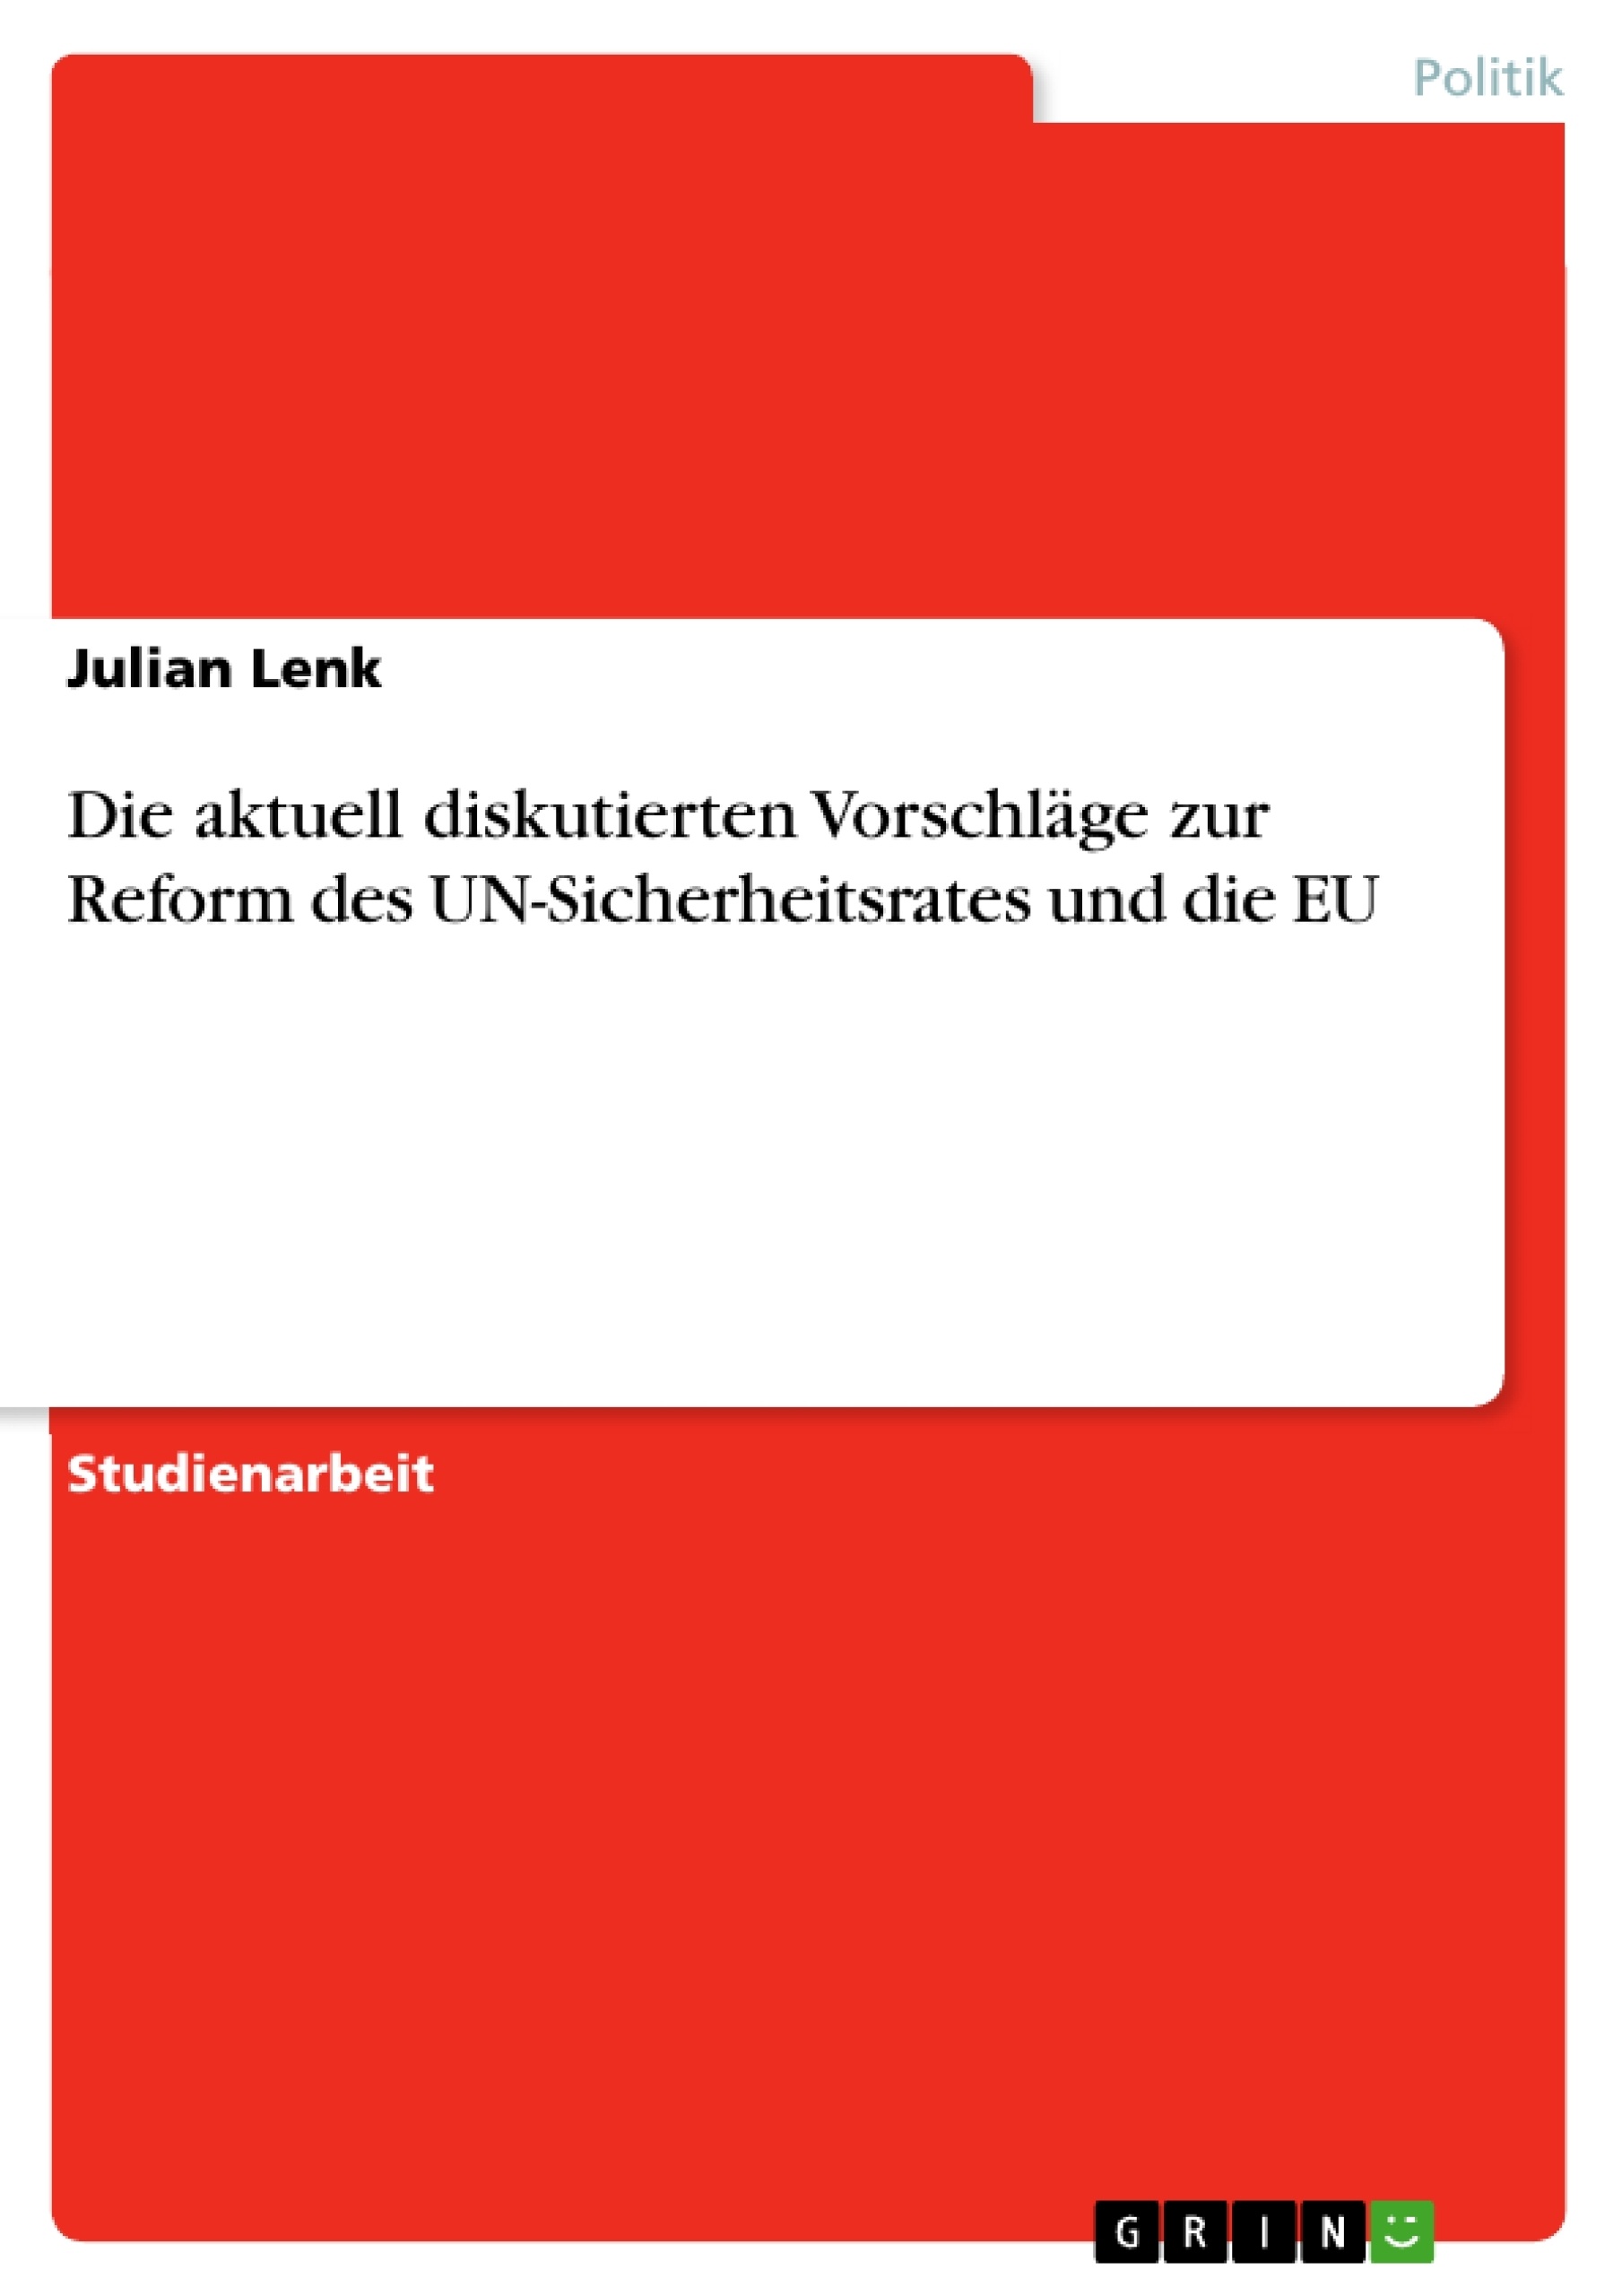 Title: Die aktuell diskutierten Vorschläge zur Reform des UN-Sicherheitsrates und die EU